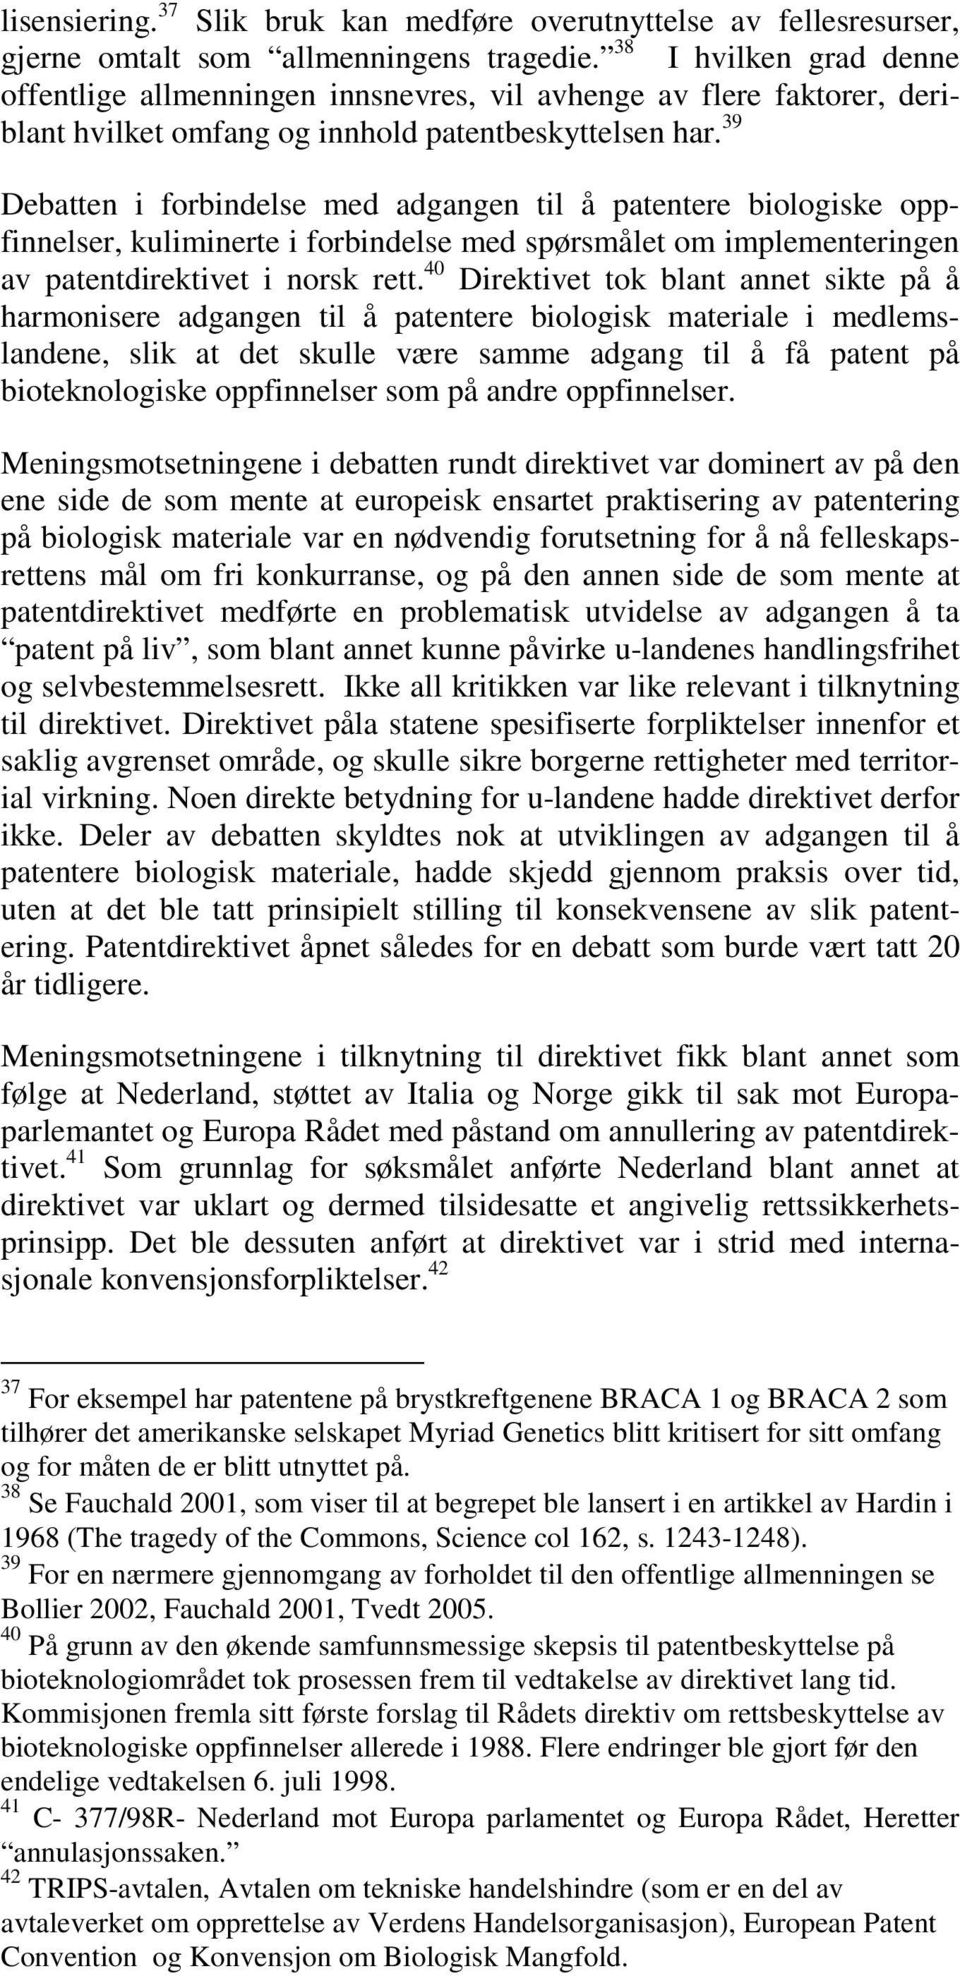 39 Debatten i forbindelse med adgangen til å patentere biologiske oppfinnelser, kuliminerte i forbindelse med spørsmålet om implementeringen av patentdirektivet i norsk rett.